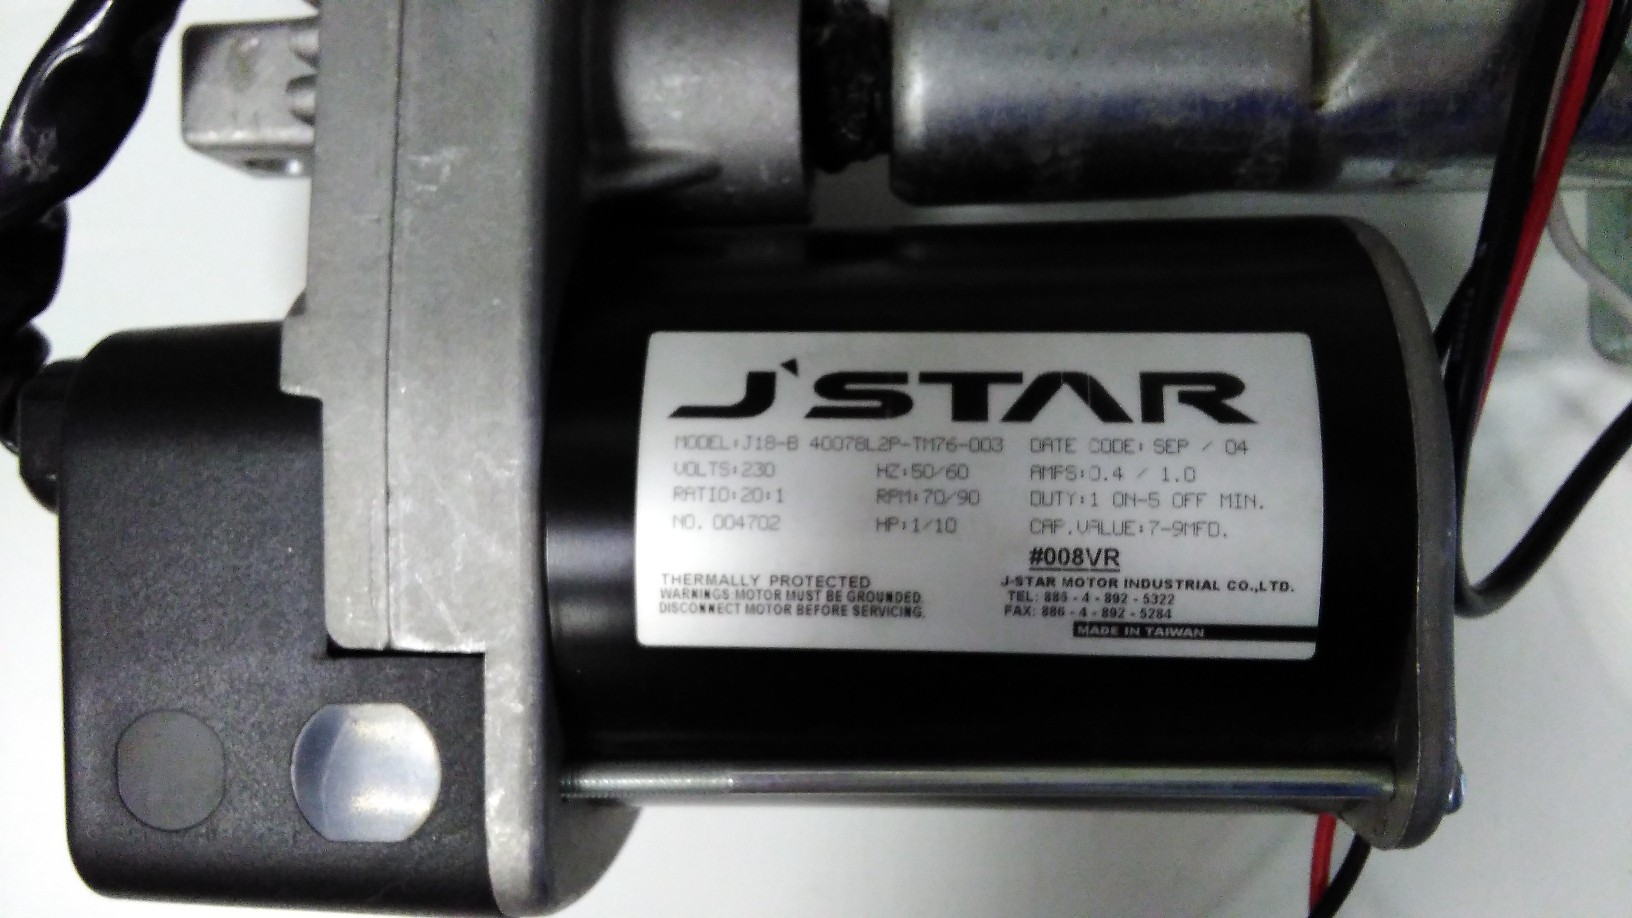 Мотор J-STAR j18-b 40078l2p-tm76-003